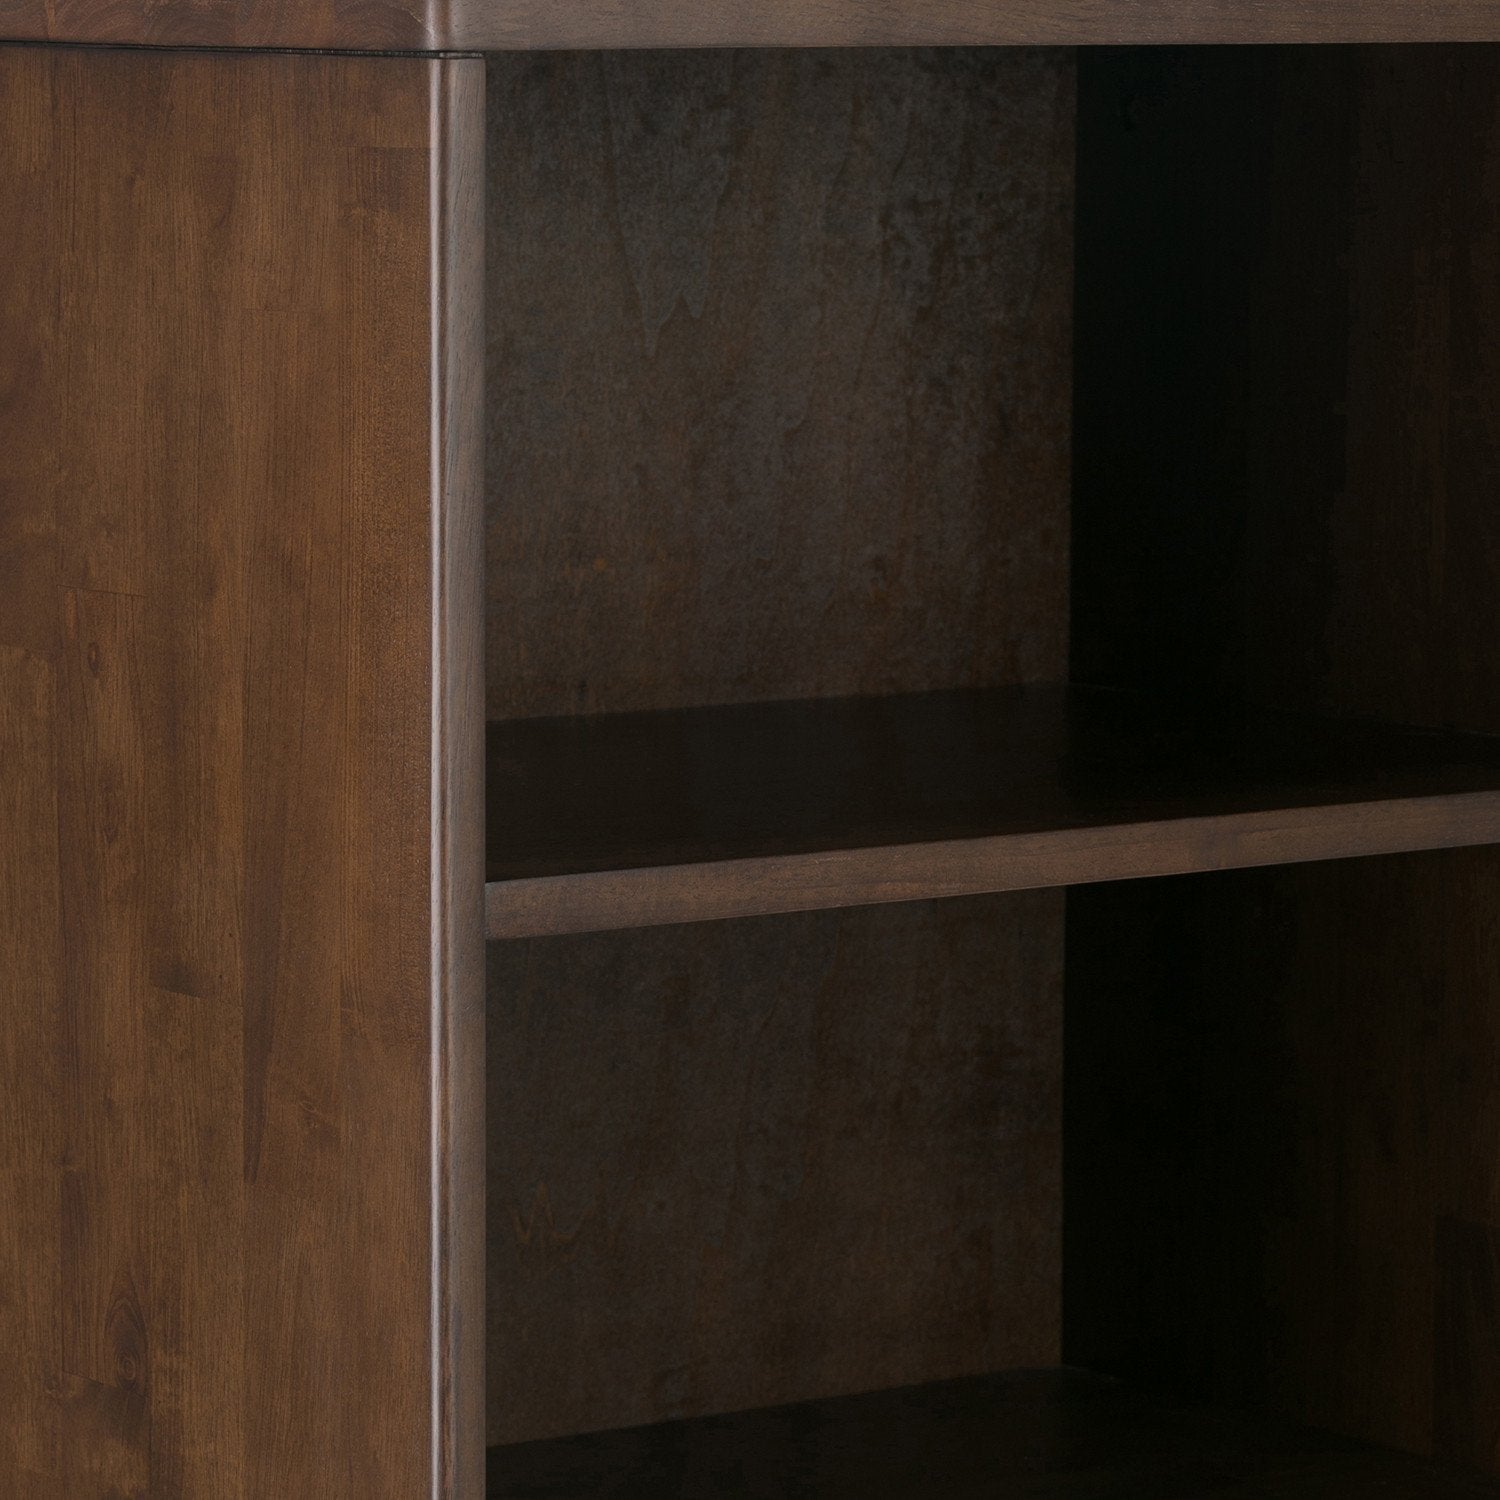 Walnut Brown | Harper 60 x 24 inch Bookcase with Storage